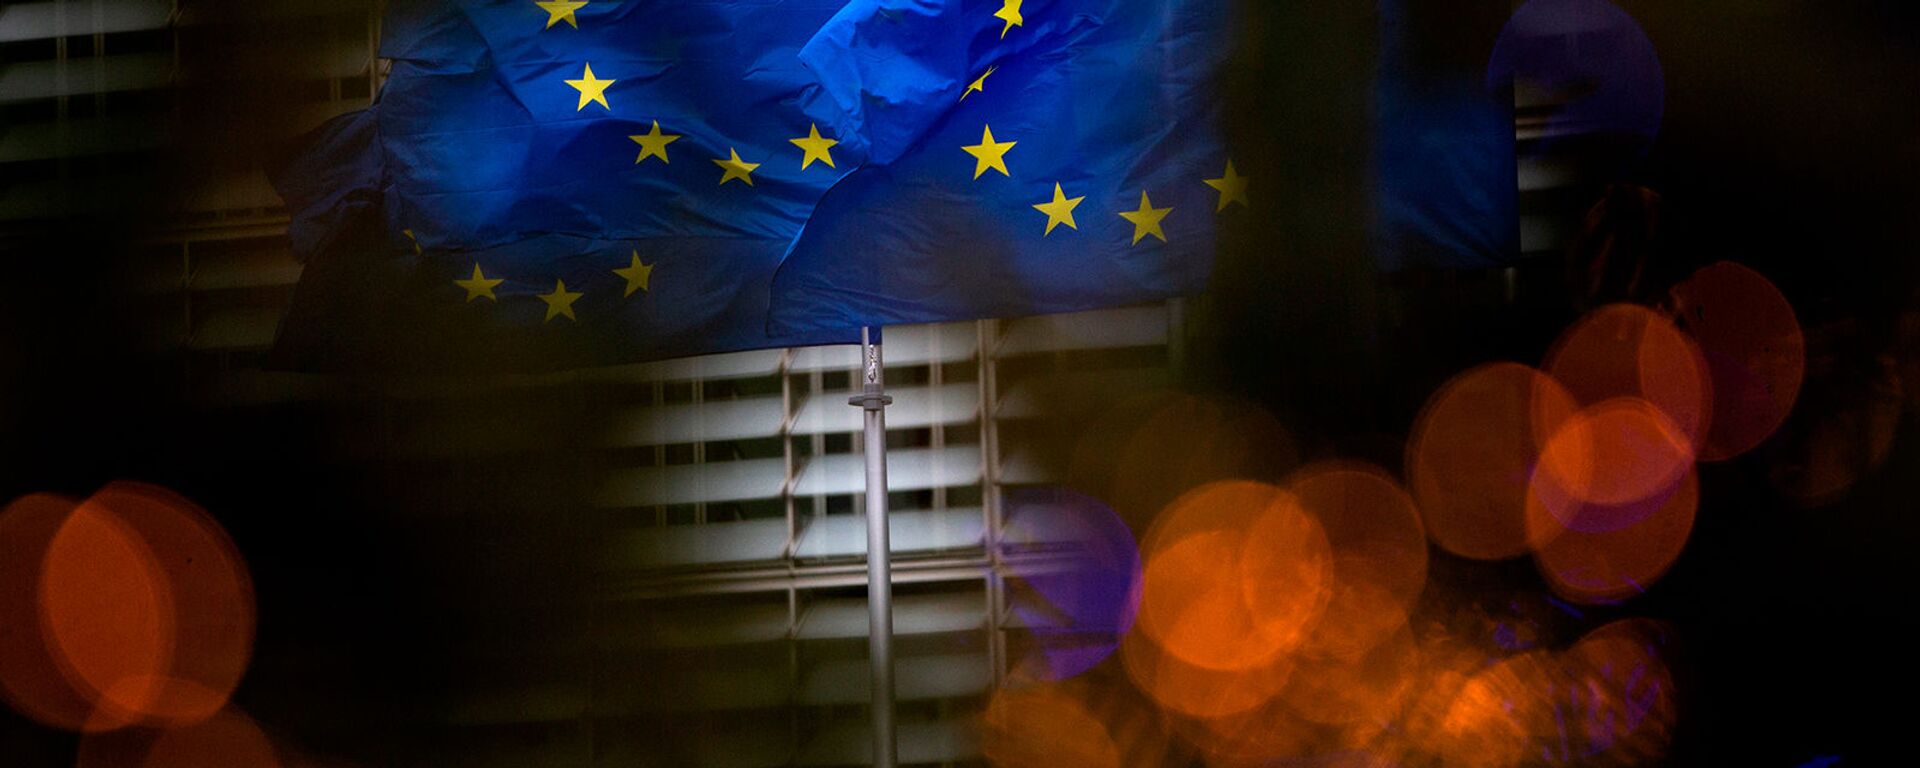 Флаги Европейского союза перед штаб-квартирой ЕС в Брюсселе - Sputnik Грузия, 1920, 10.02.2021